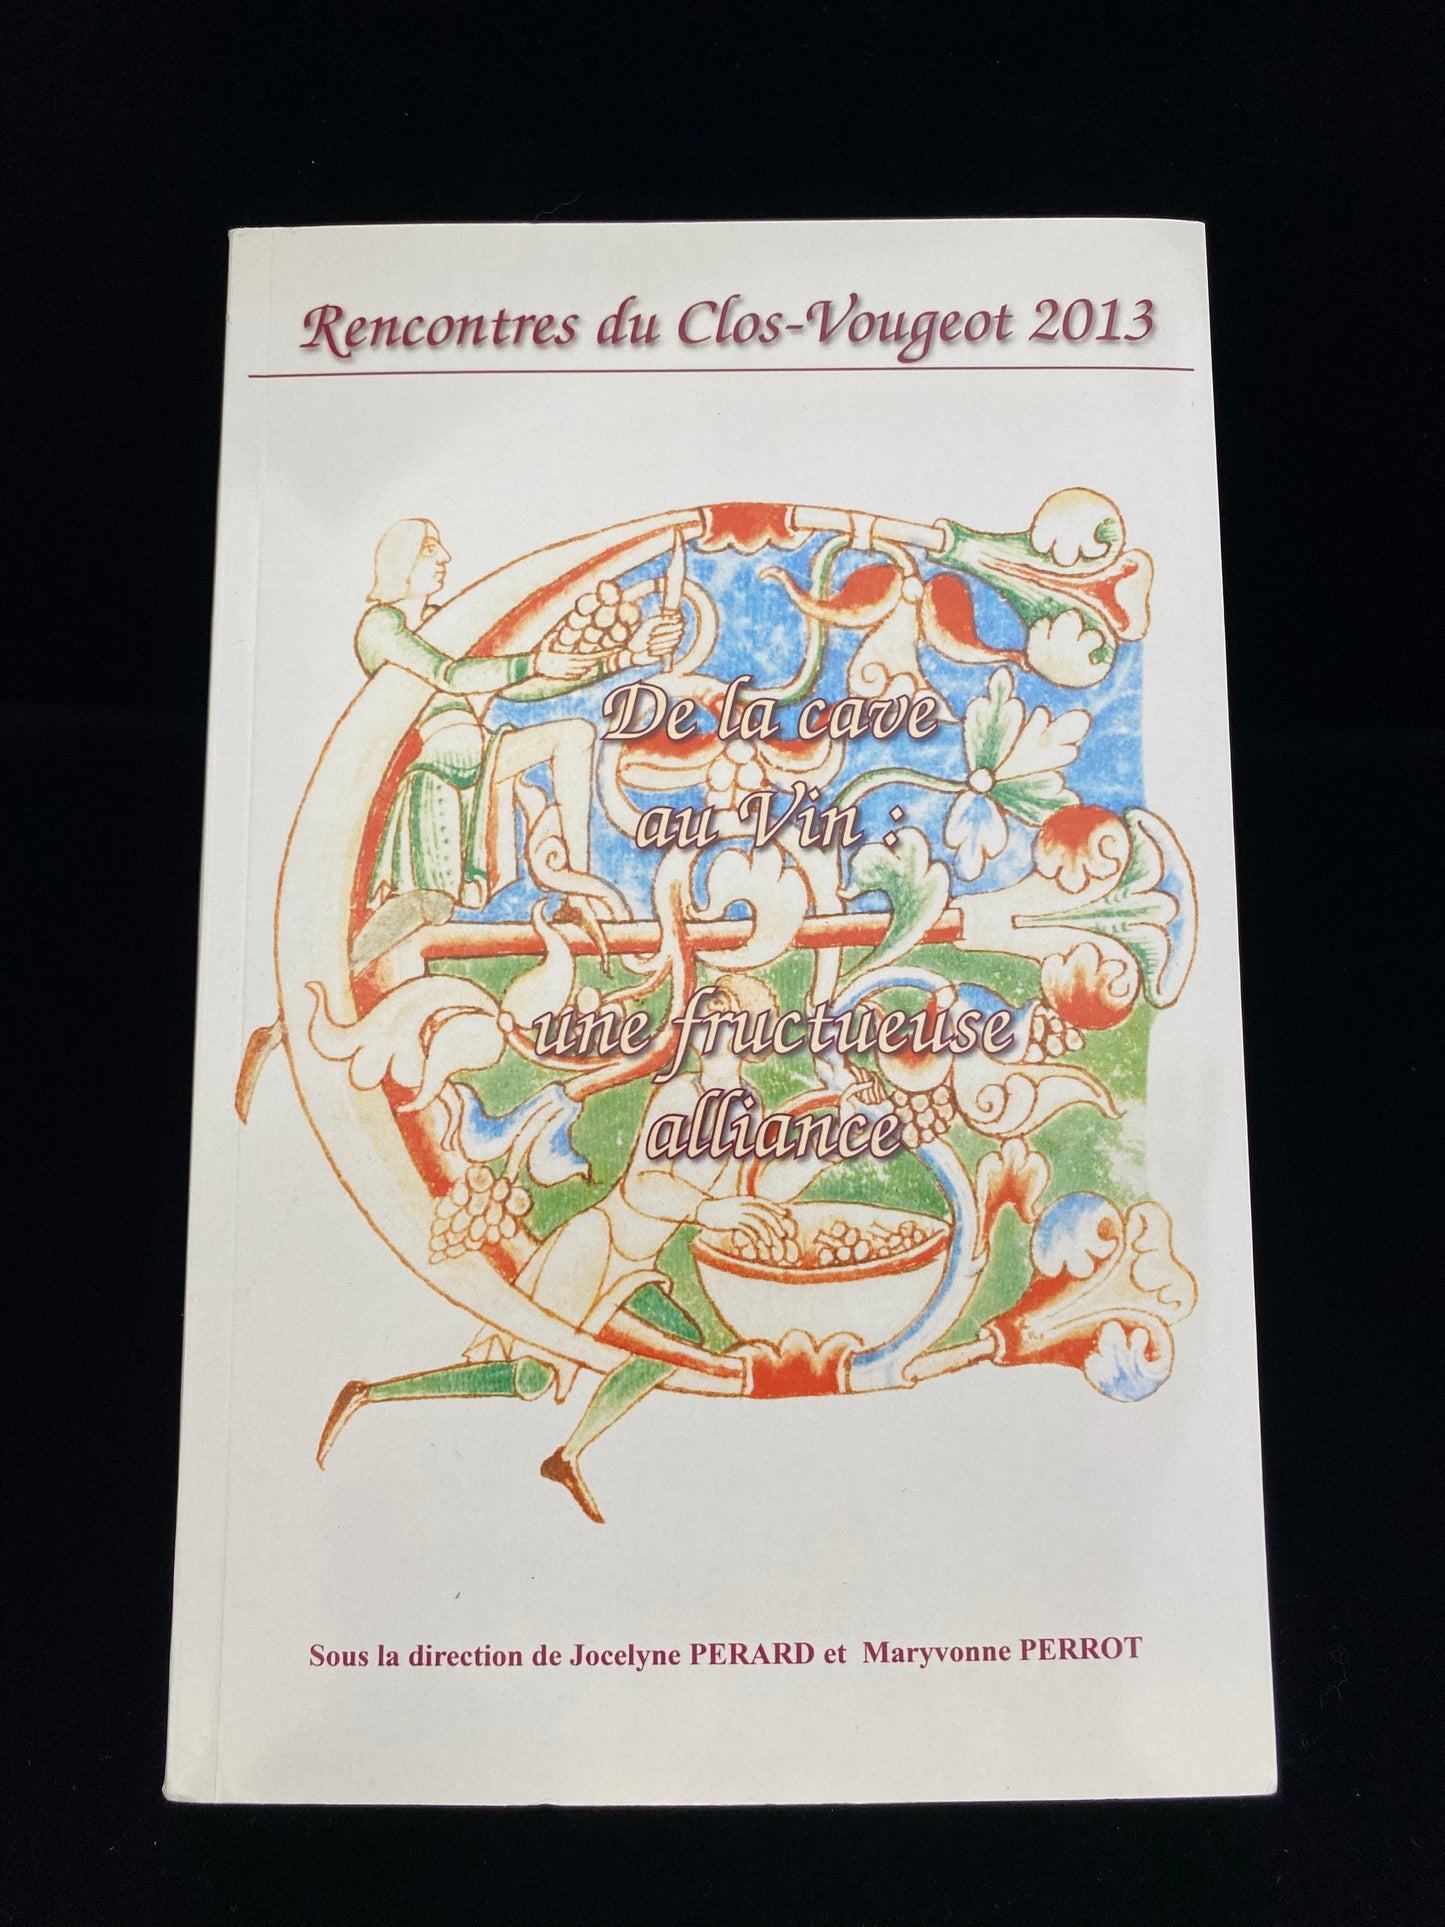 Rencontres du Clos-Vougeot – "De la cave au vin: une fructueuse alliance" (2013)